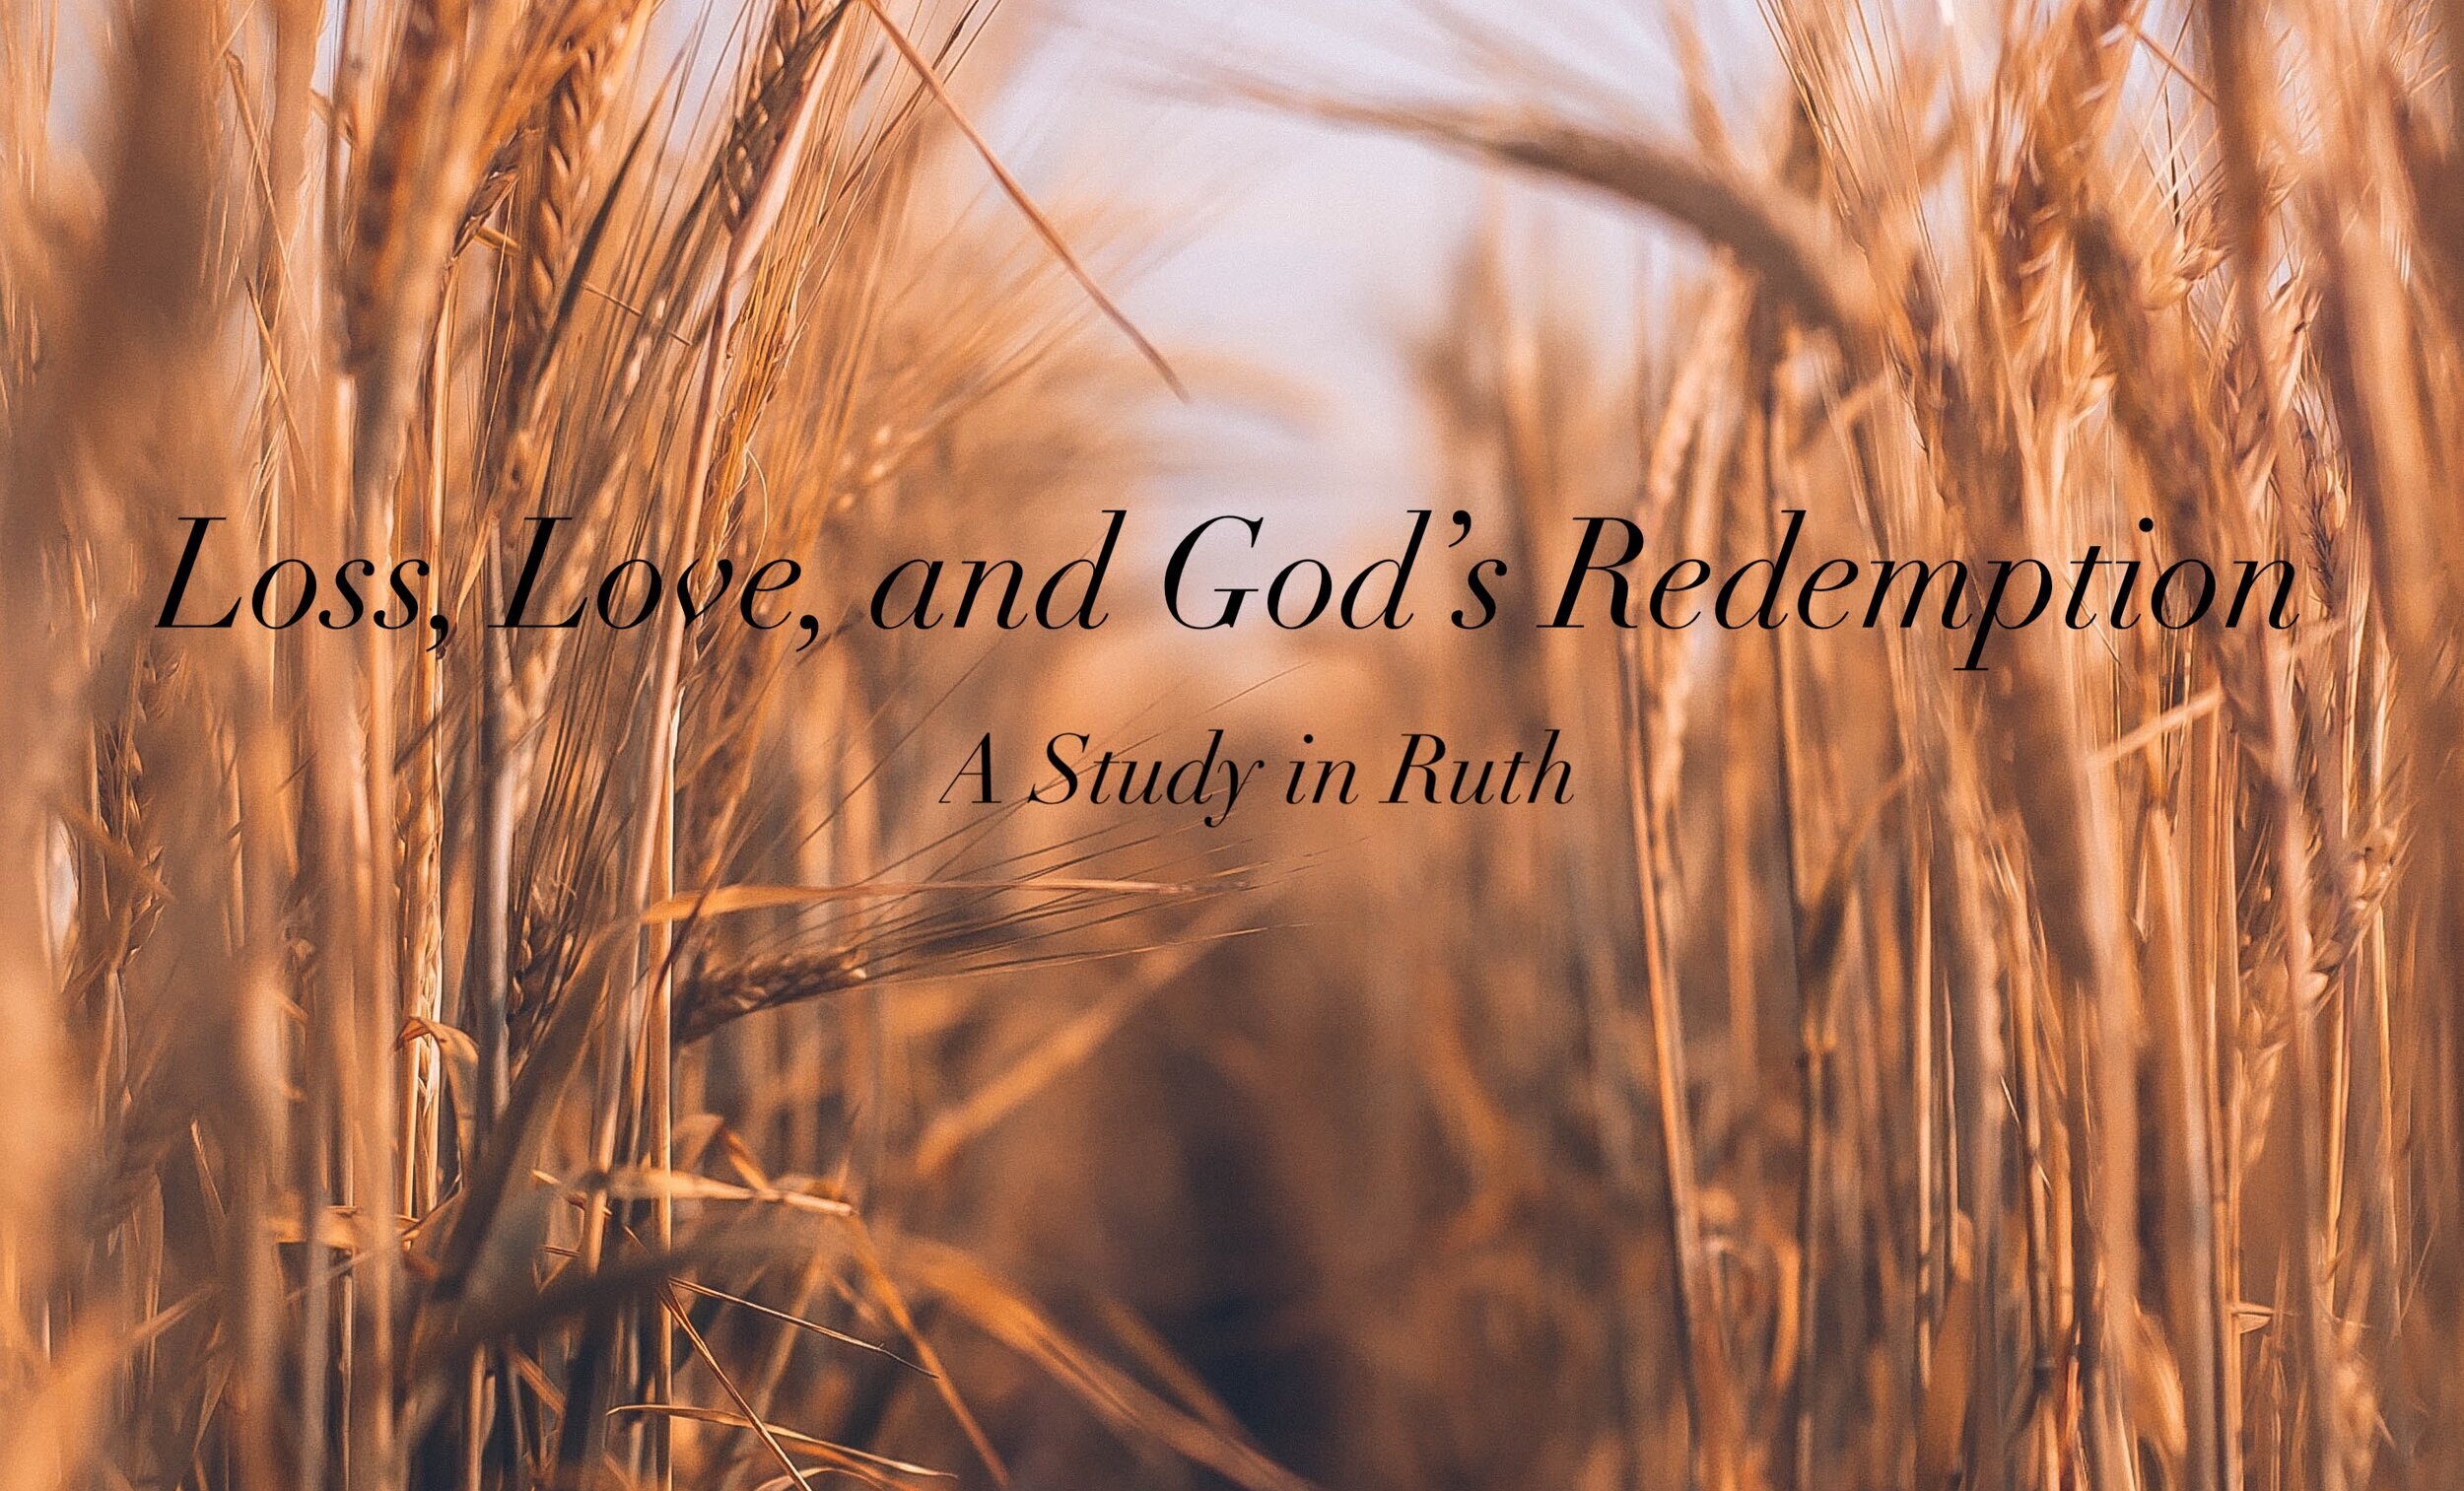 Ruth 2:1-23